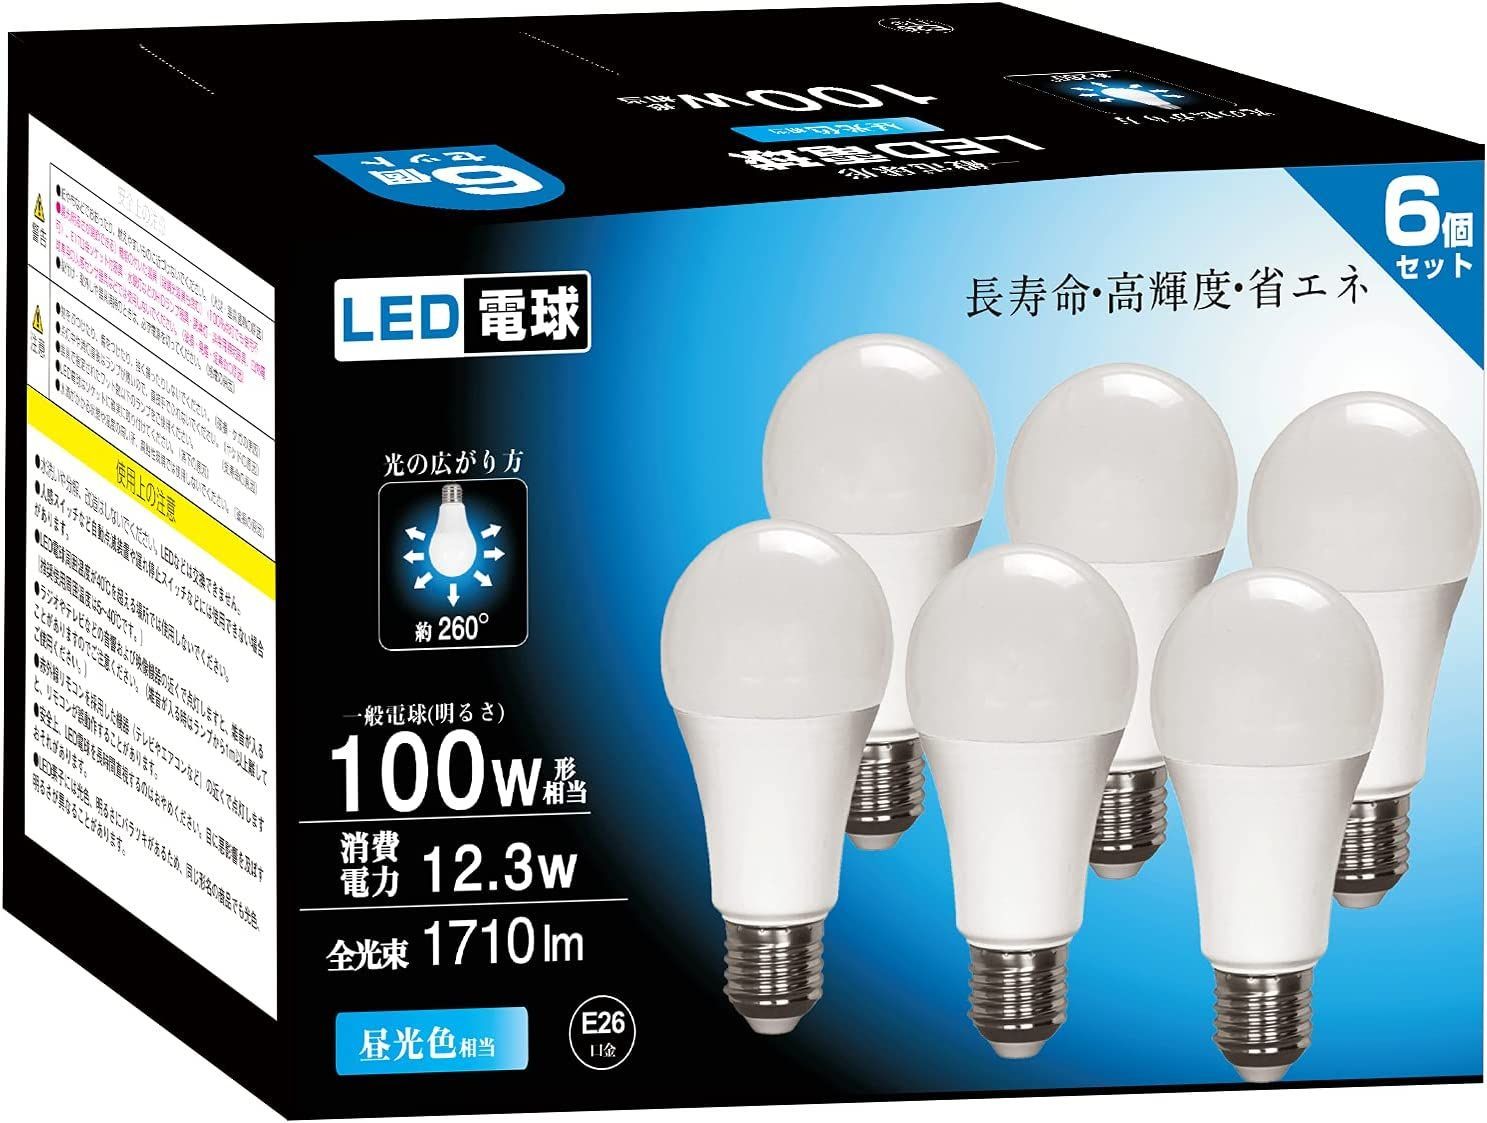 ロハス LED電球 100W形相当 昼光色 14W 一般電球形 全方向タイプ 通販